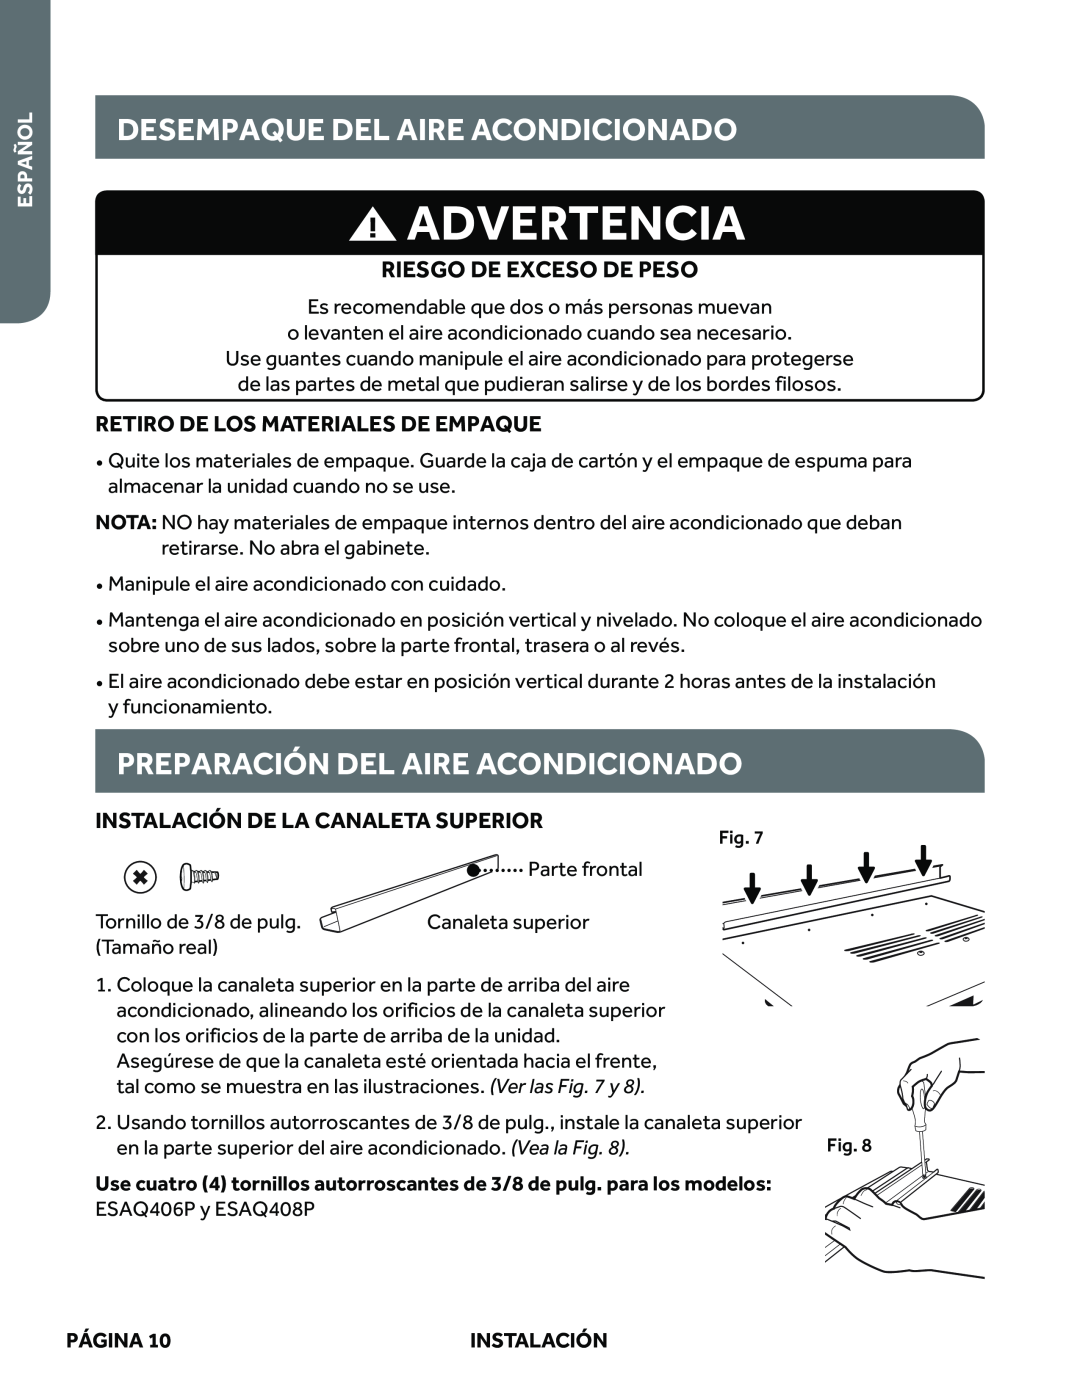 Haier ESAQ408P Desempaque Del Aire Acondicionado, Preparación Del Aire Acondicionado, Advertencia, Español, Página 